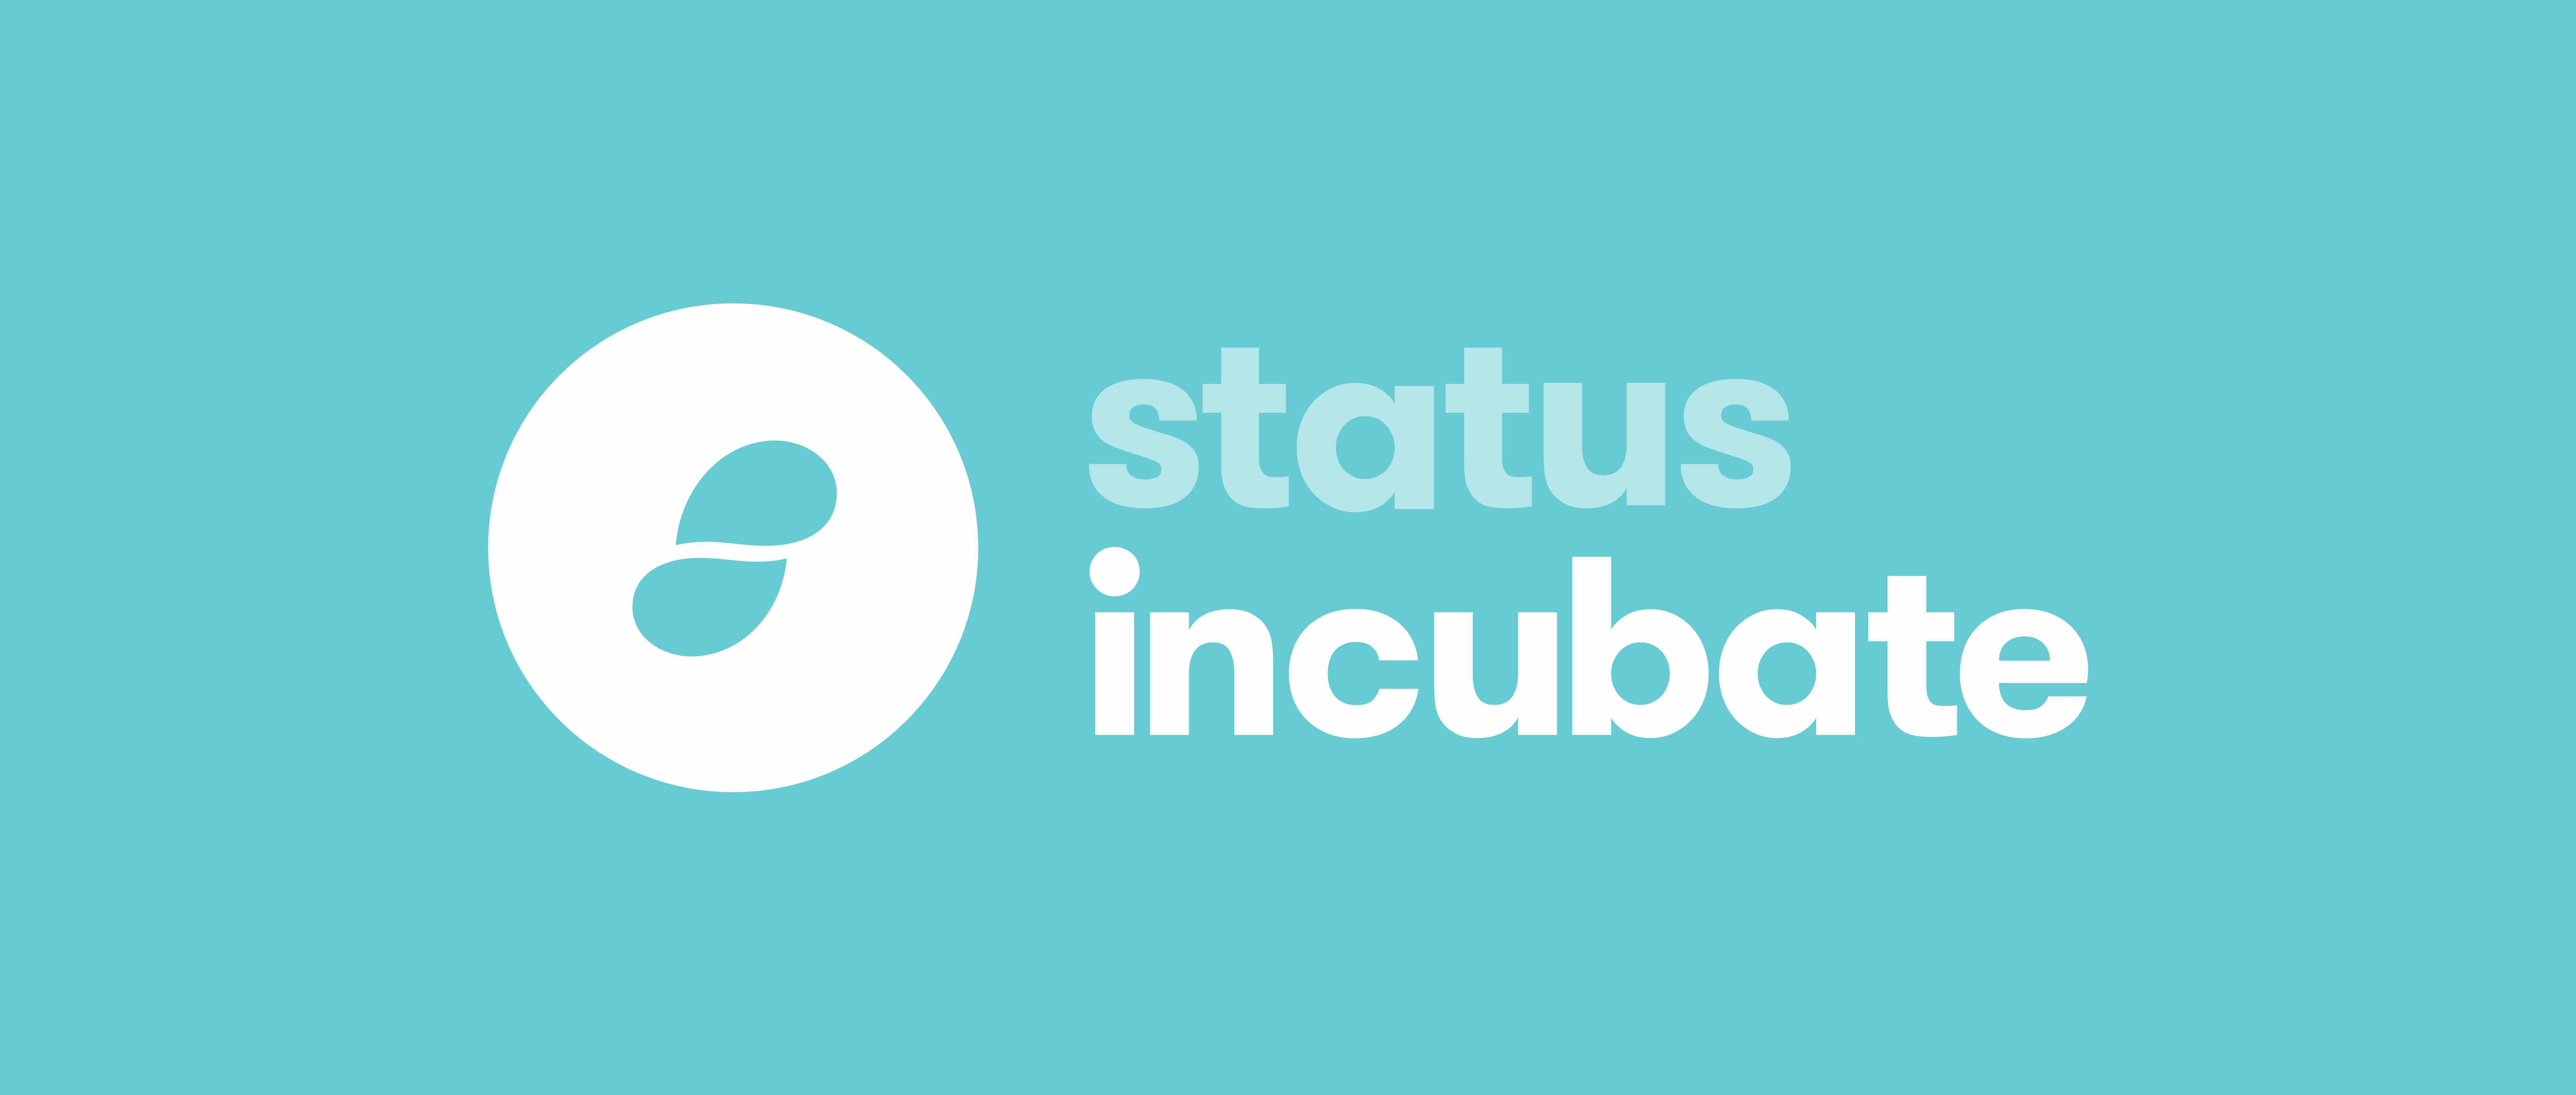 status incubate